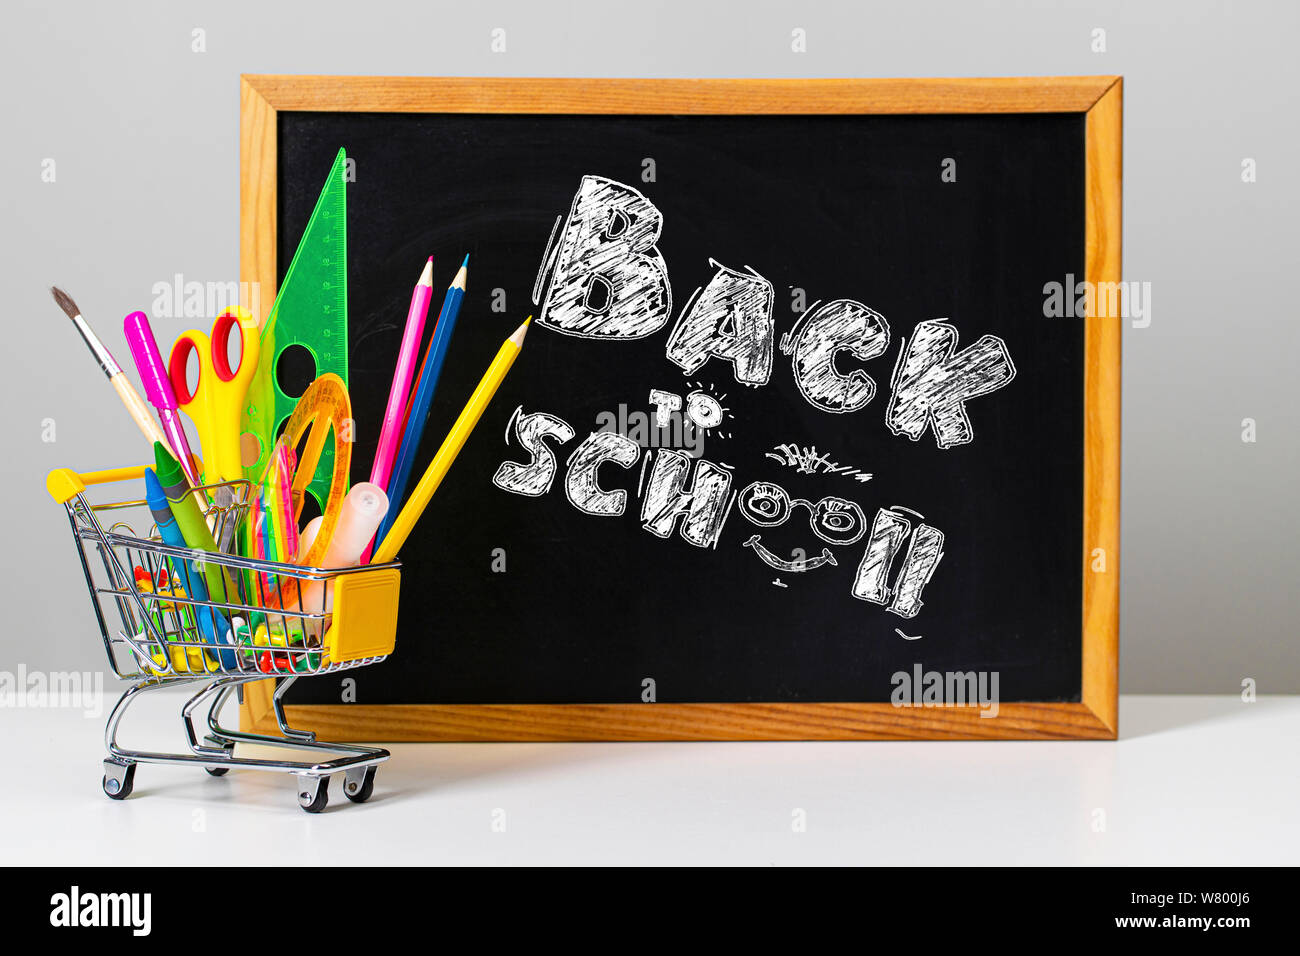 Varie colorato forniture scolastiche e carrello di shopping sullo sfondo del consiglio scolastico con le parole si torna a scuola Foto Stock